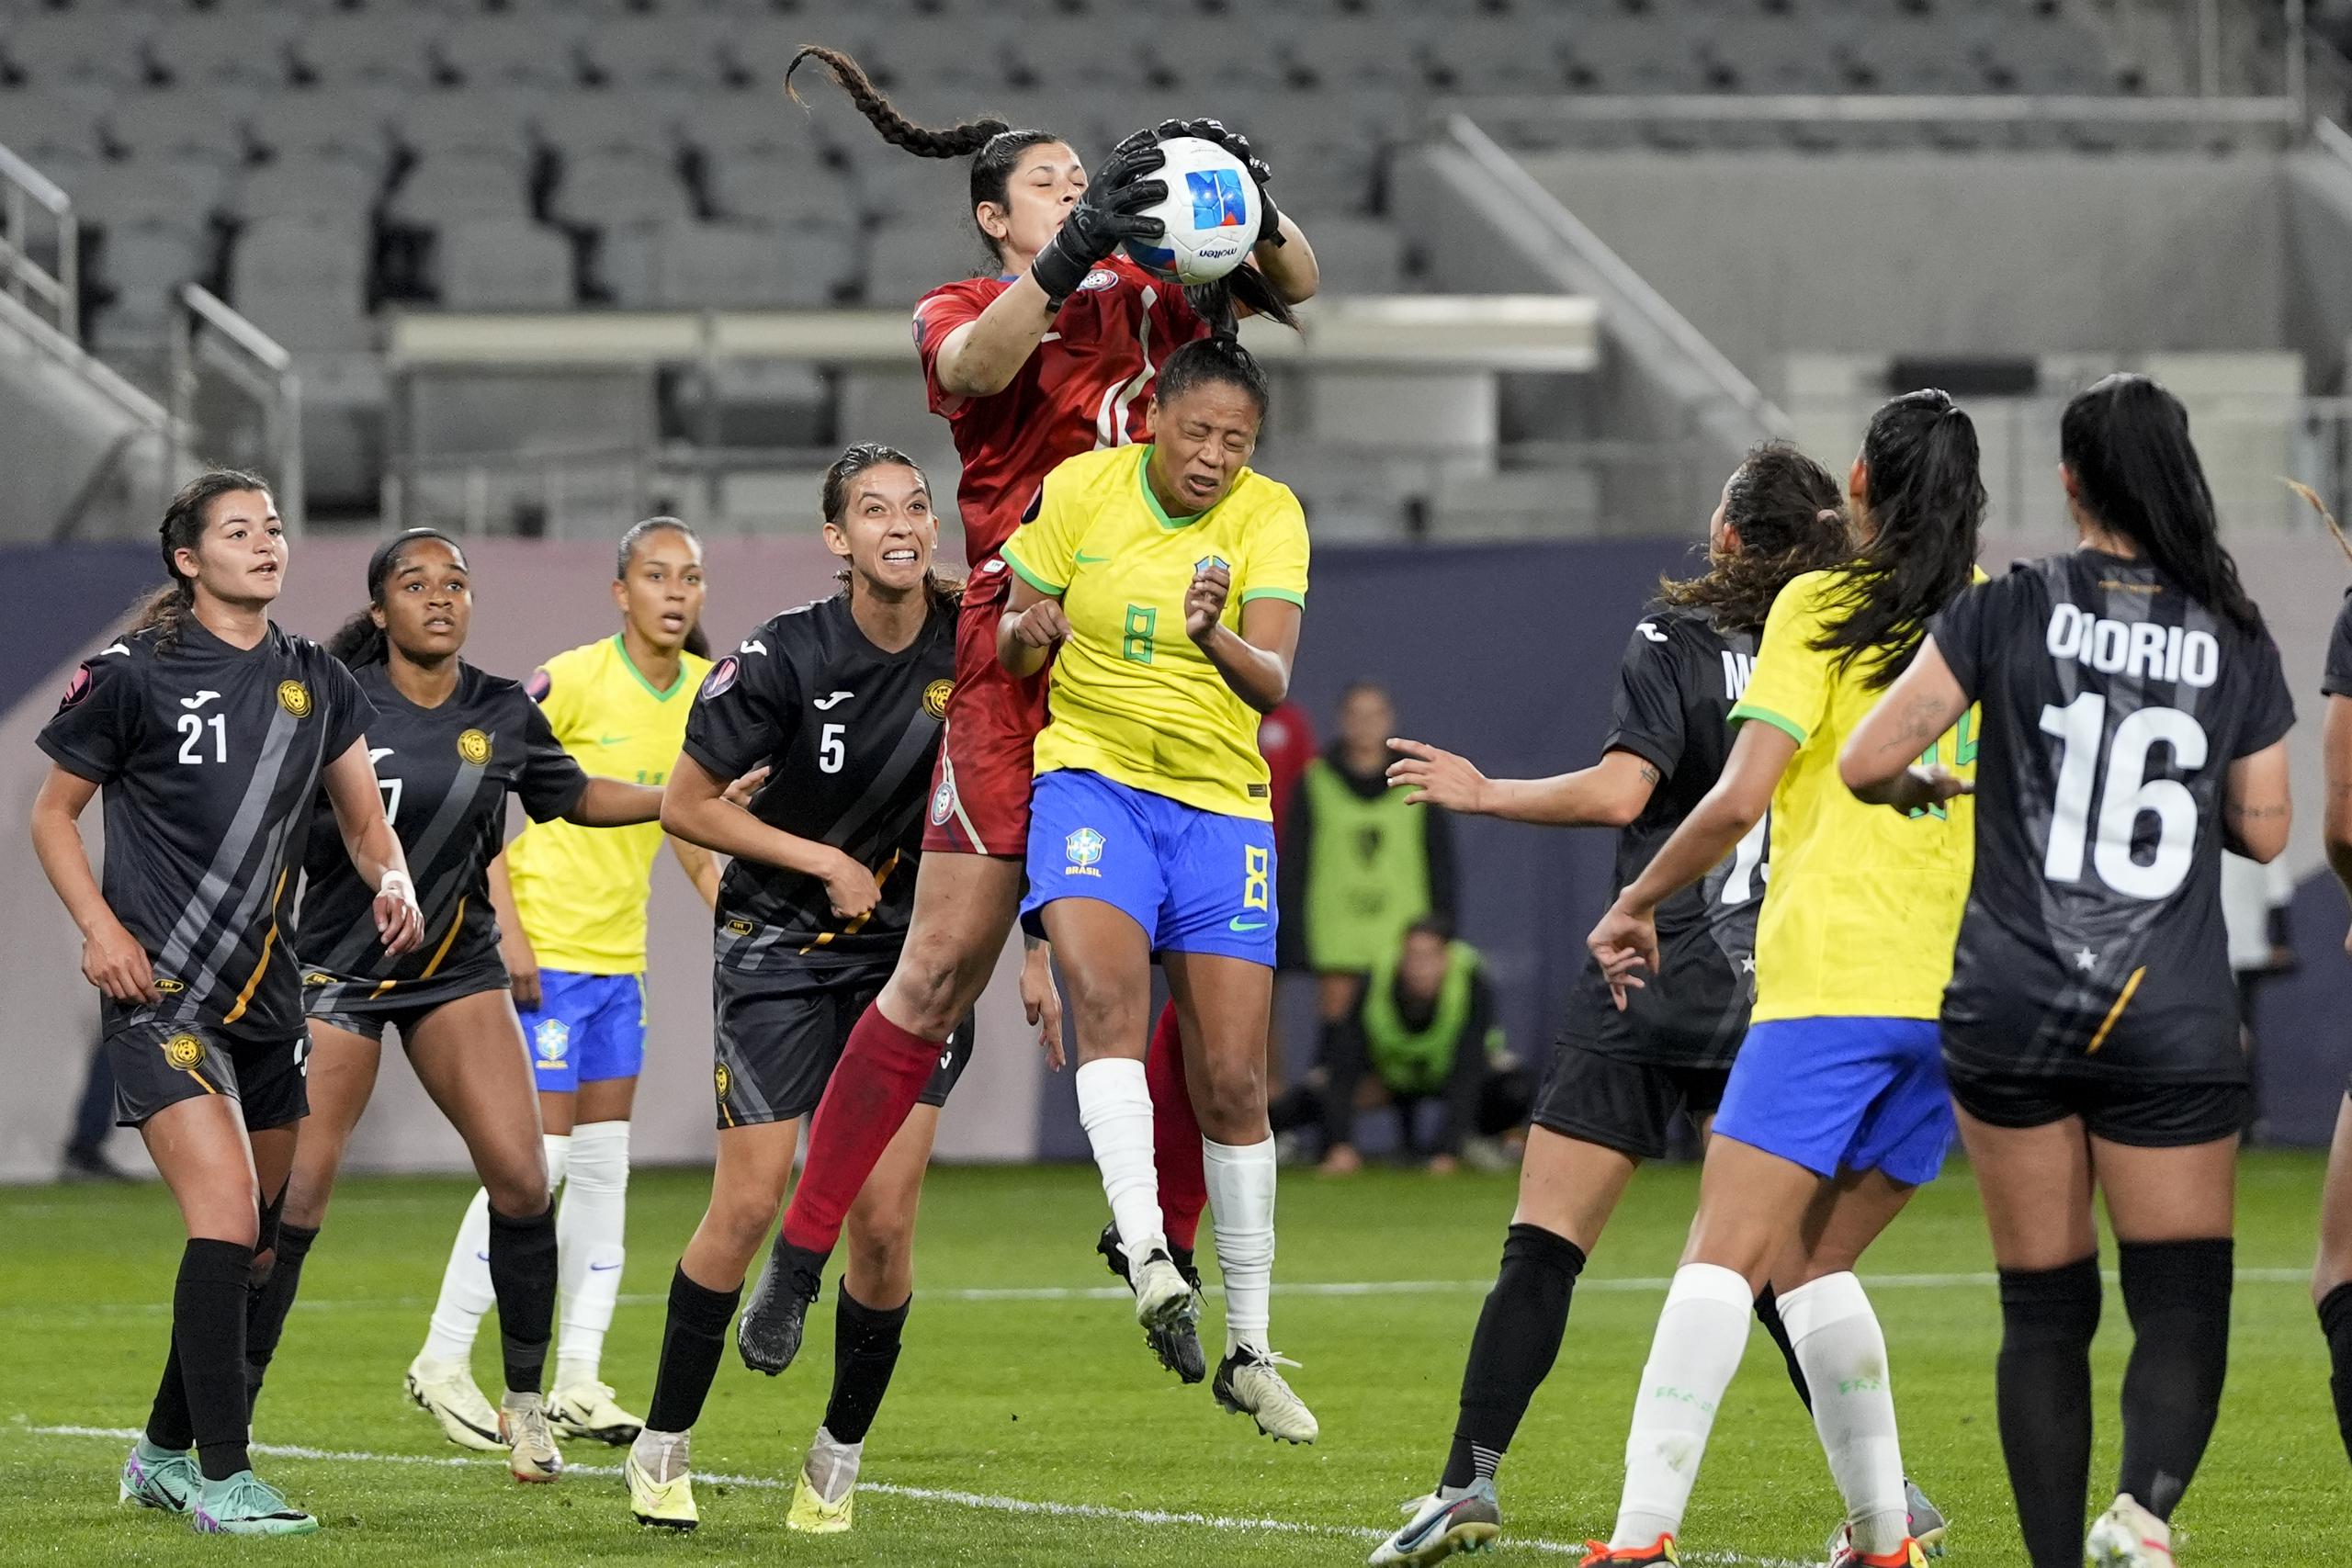 La portera de Puerto Rico, Sydney Martínez, agarra una pelota por arriba de Ary Borges durante la acción de la primera mitad del partido anoche.